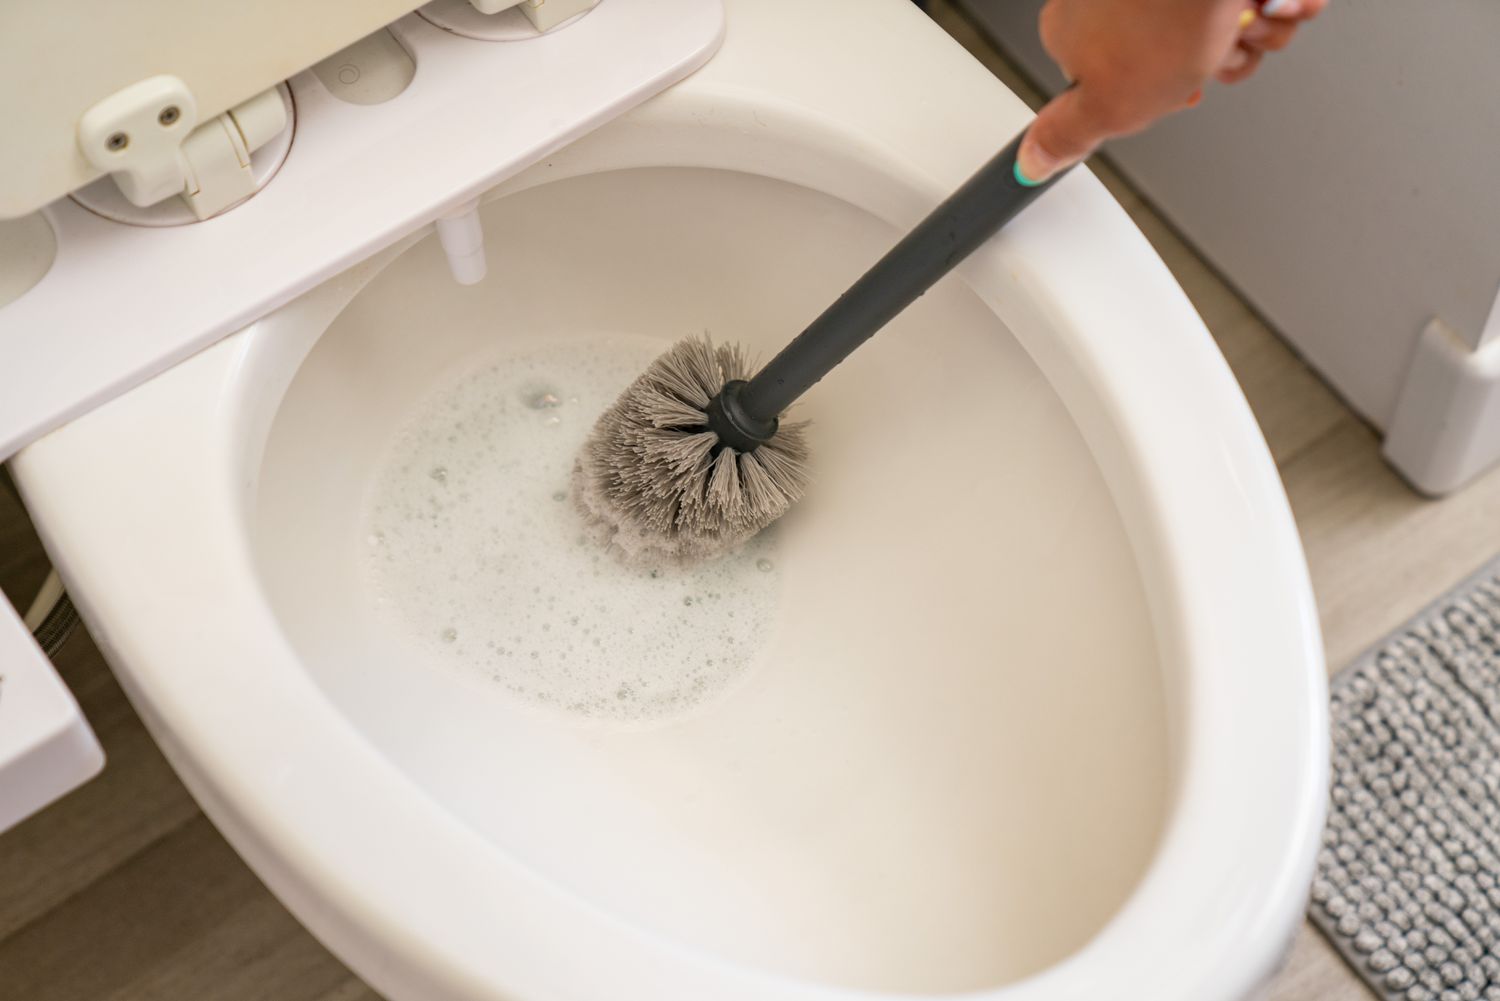 Cuvette de salle de bain nettoyée avec un nettoyant multi-usages et une brosse à récurer